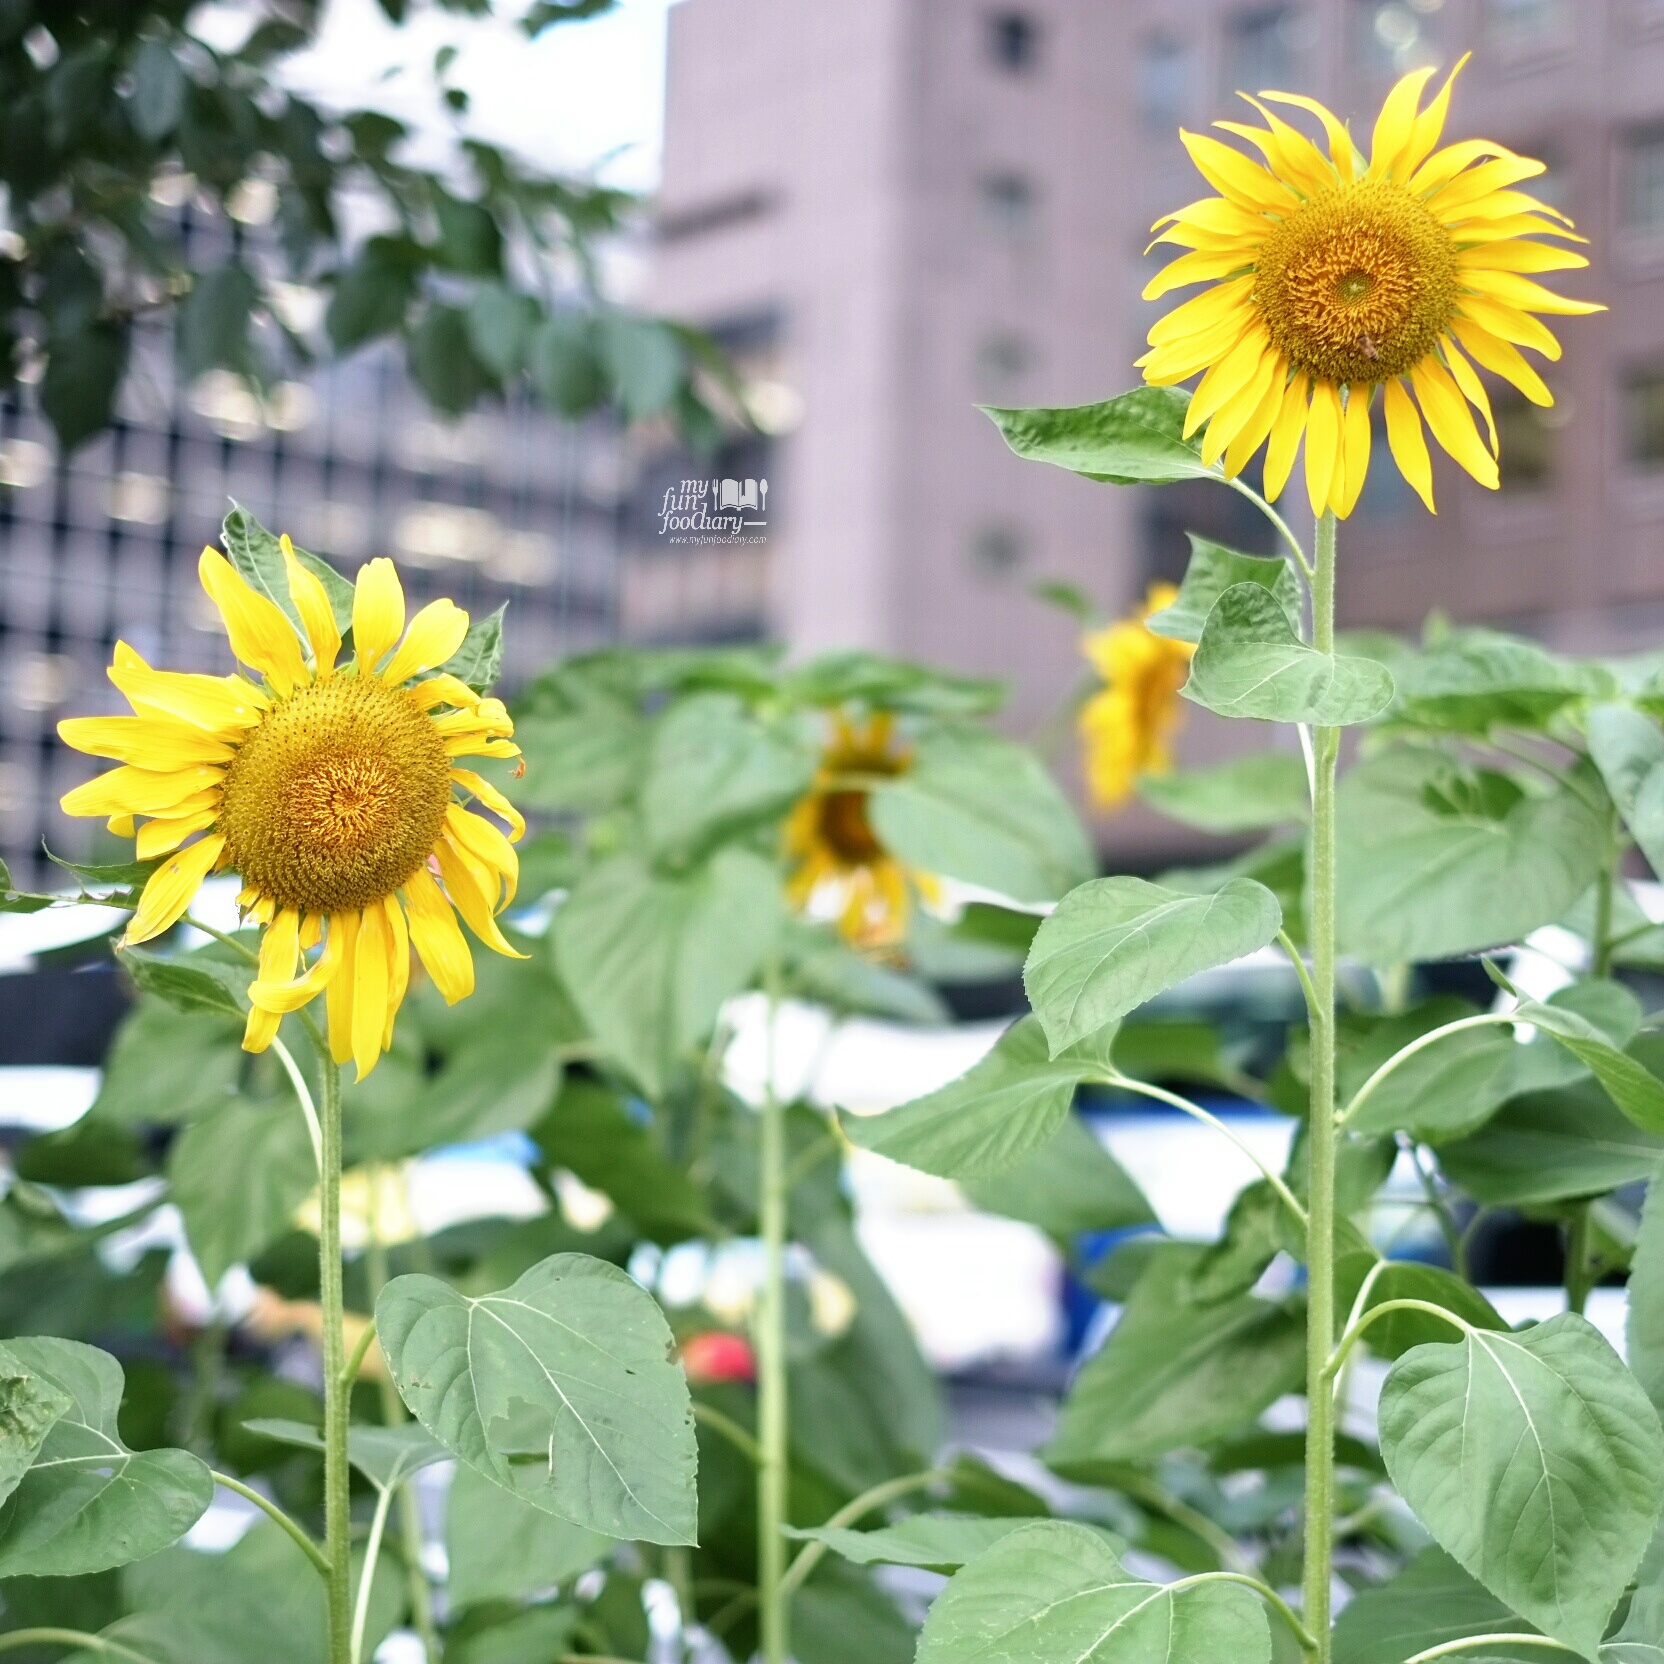 Beautiful Sunflower at Ginza Tokyo by Myfunfoodiary